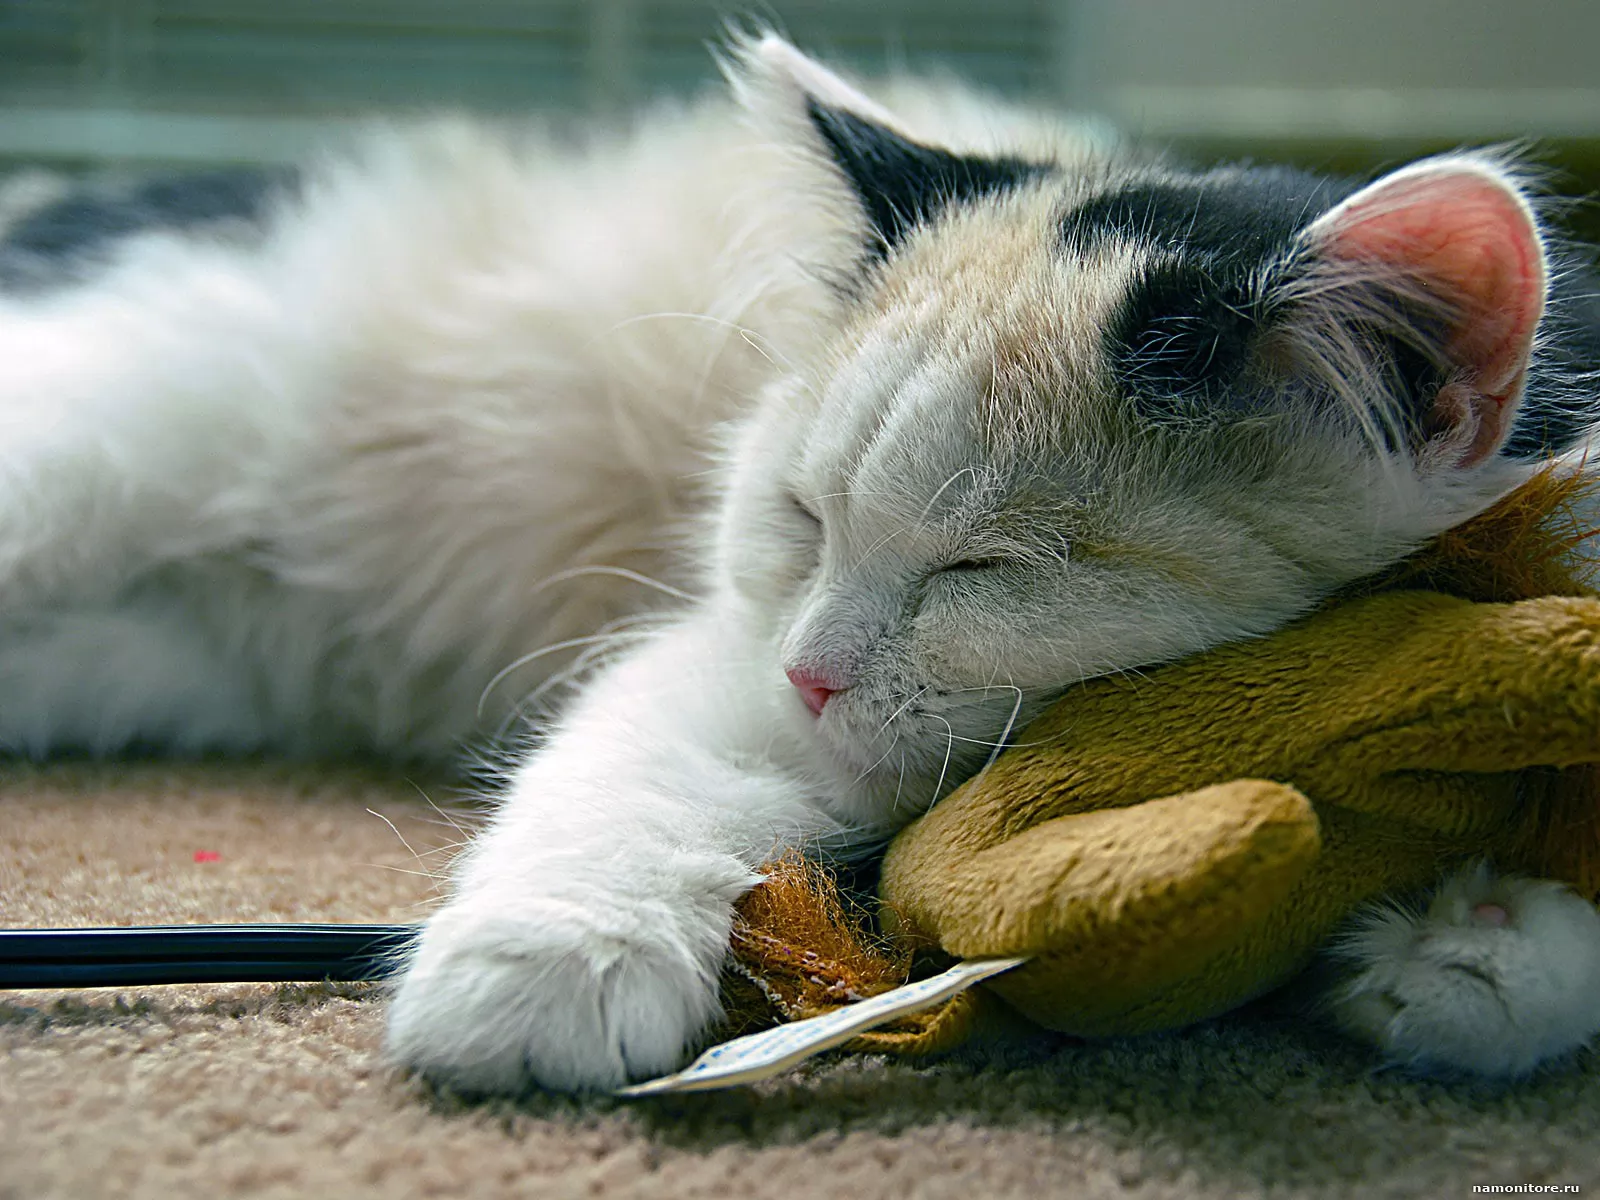 Спи спокойно петь. Спокойный кот. Спящий кот. Спящие котики. Сонный кот.